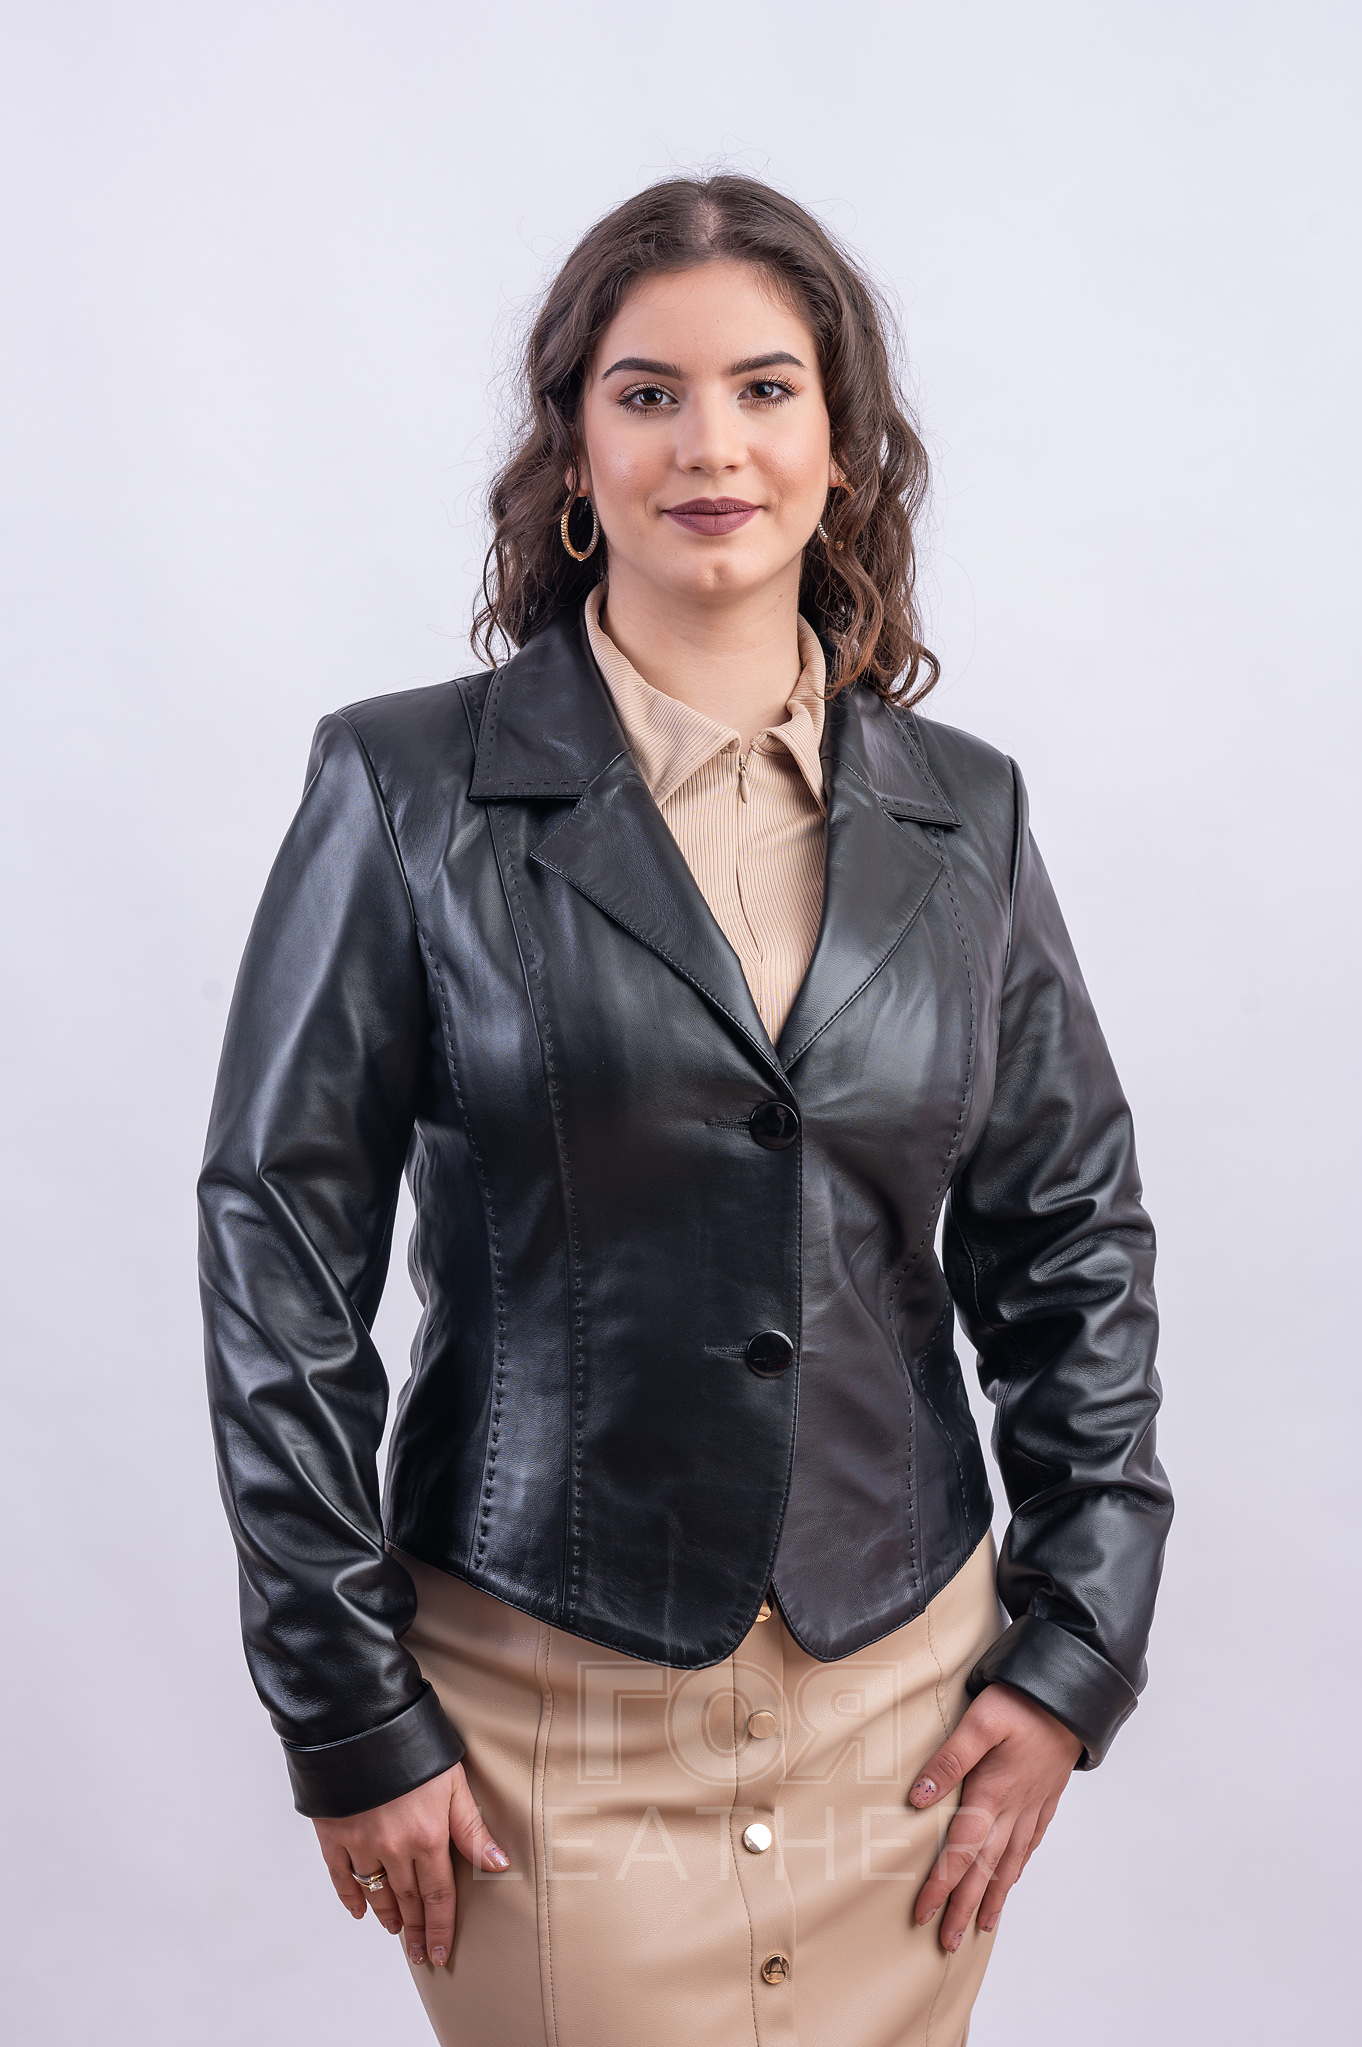 Дамско късо кожено сако от ГОЯ Leather. Нов модел кожено сако. Моделът е къс втален, без джобове. Сакото е изработено от висококачествена агнешка кожа.